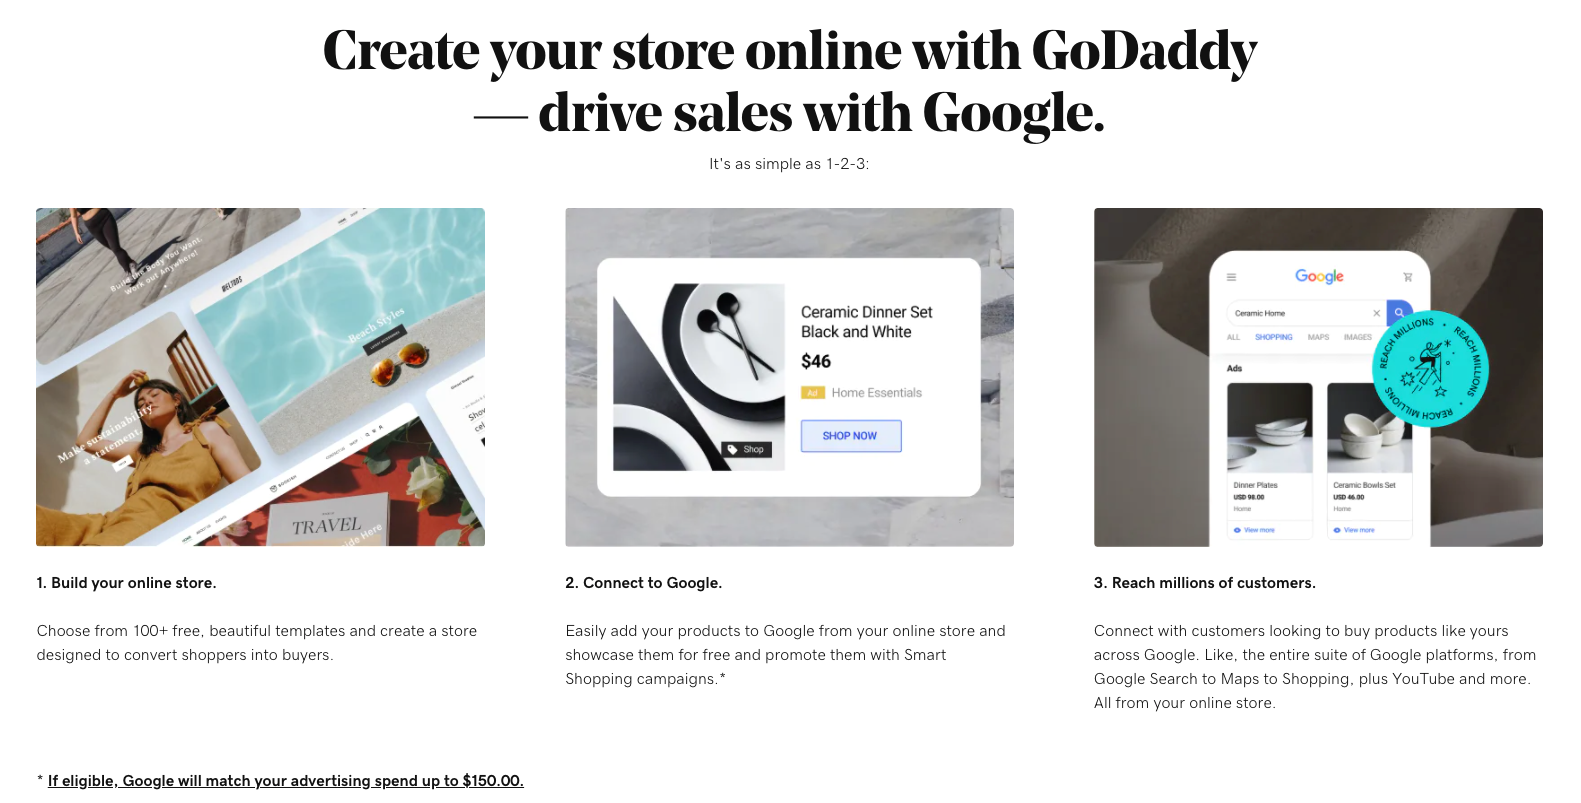 En skärmdump av marknadsföringsskärmen som visar fördelarna och enkelheten med att ansluta till Google Shopping